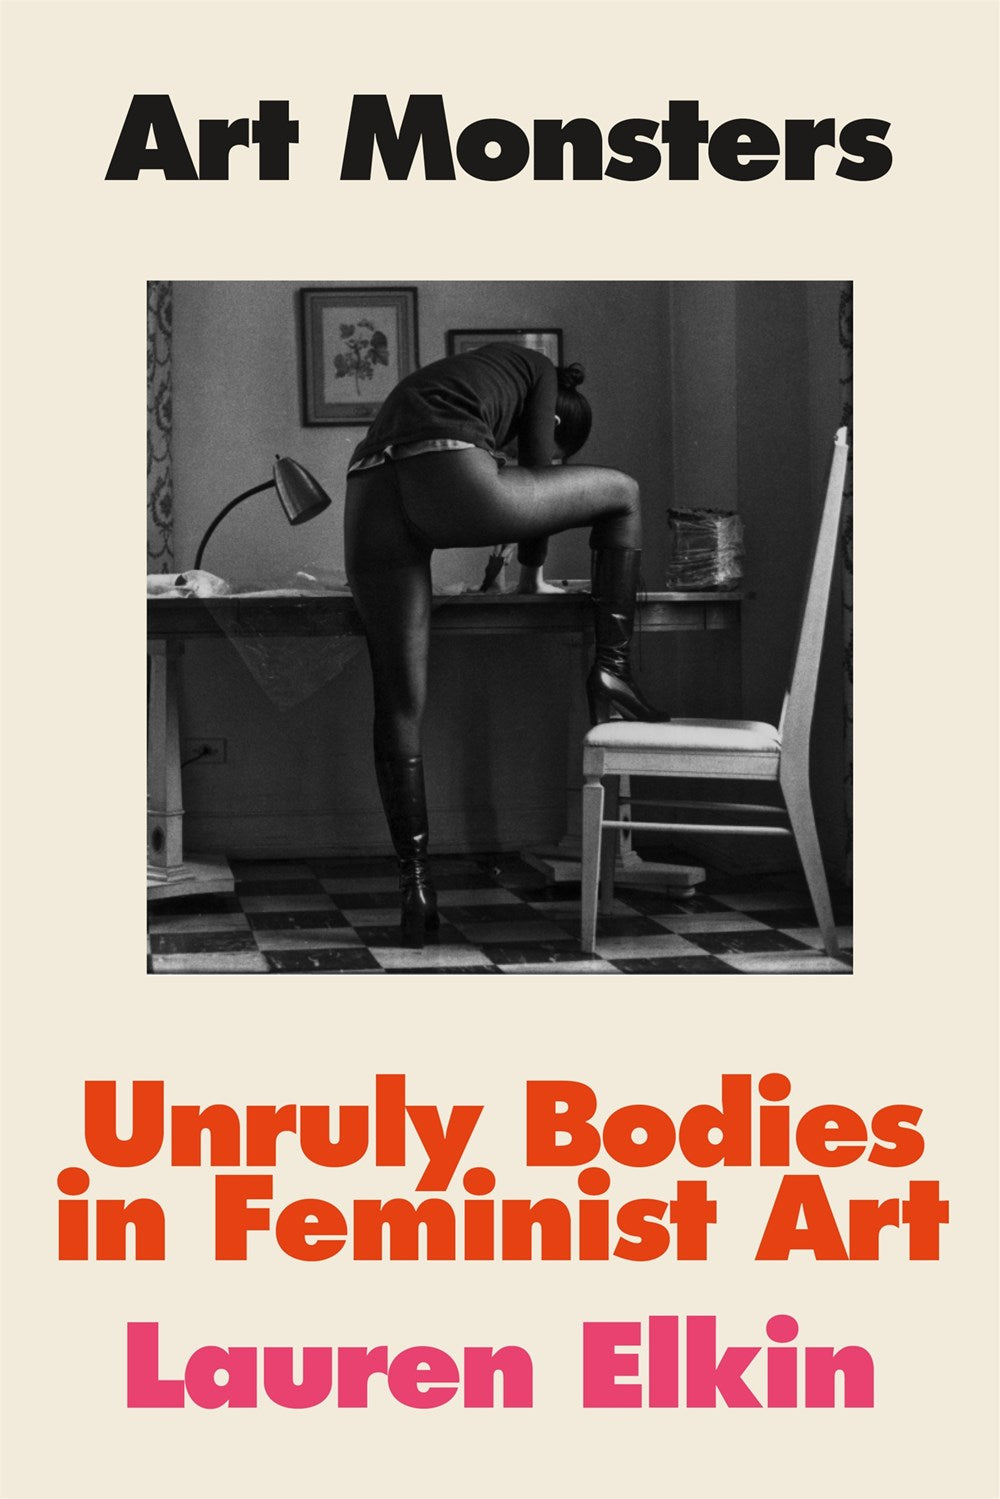 Art Monsters: Unruly Bodies in Feminist Art by Lauren Elkin (11/14/23)